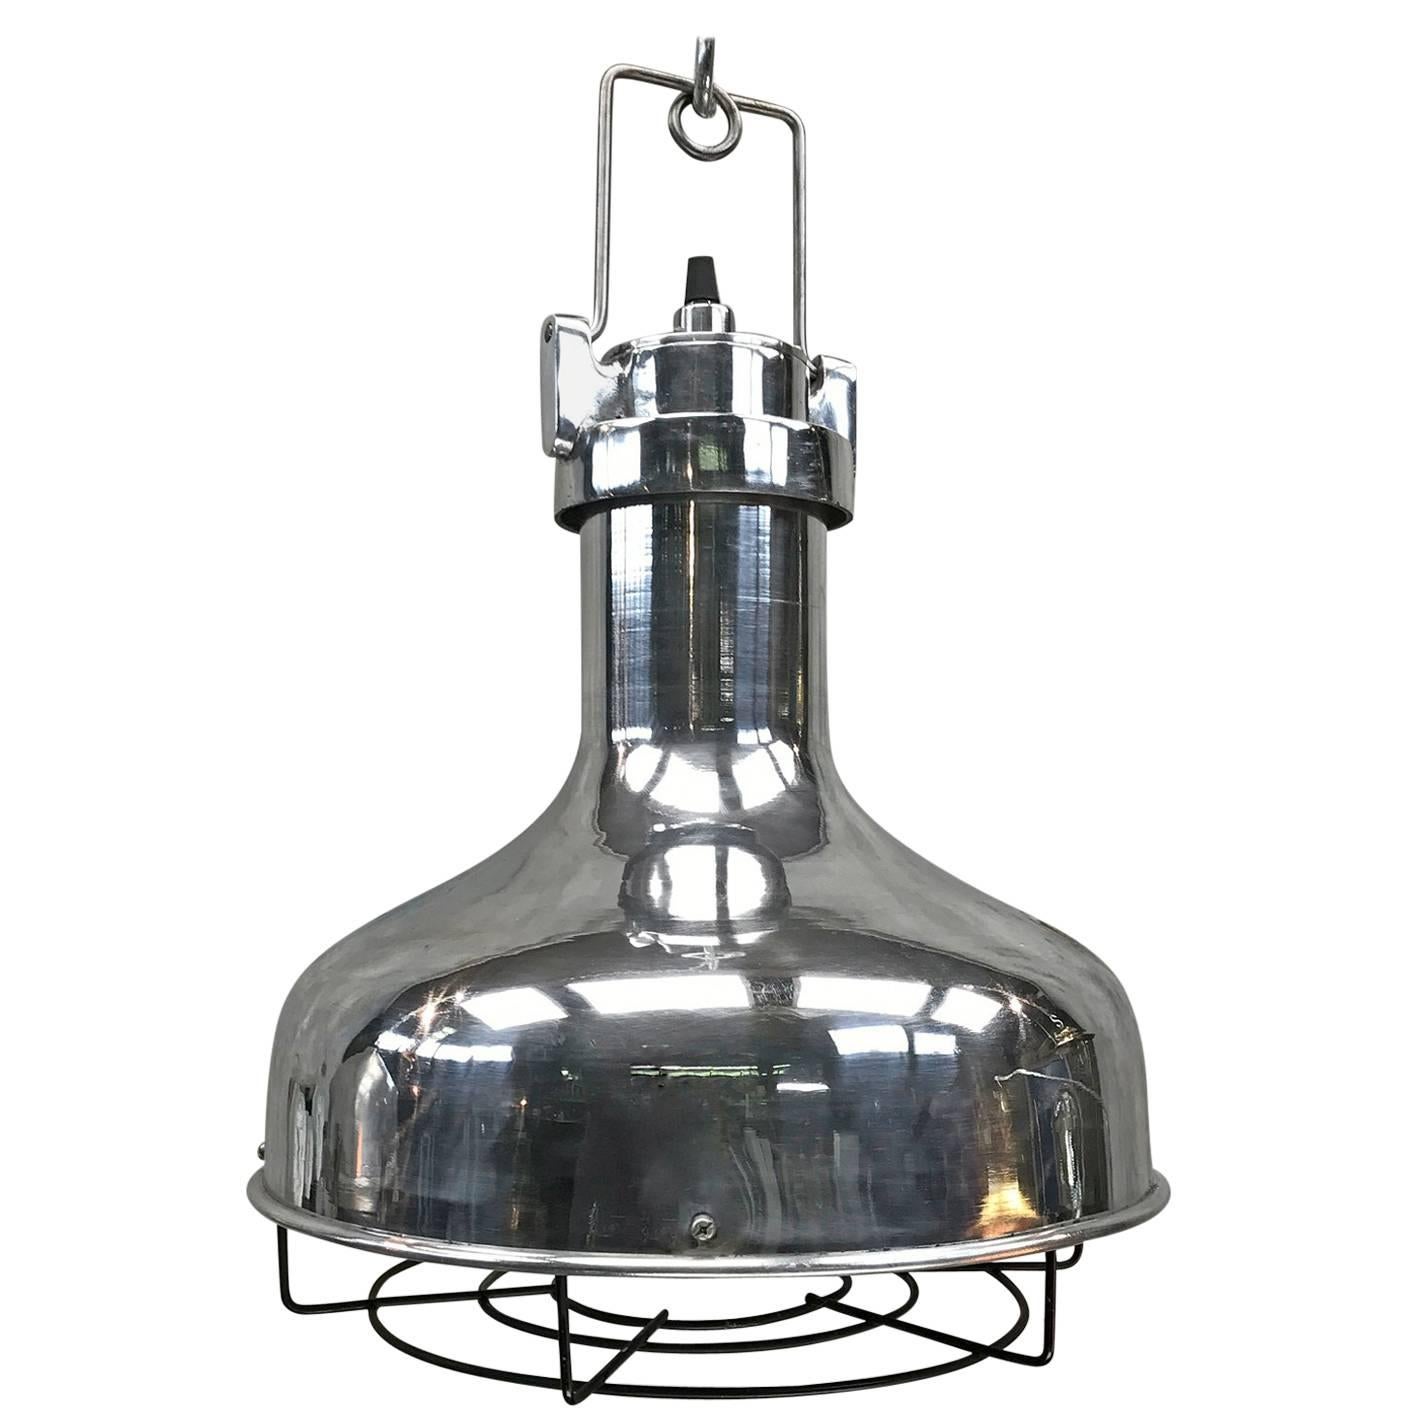 Late 20th Century American Aluminium Nautical Vintage Industrial Pendant Lamp